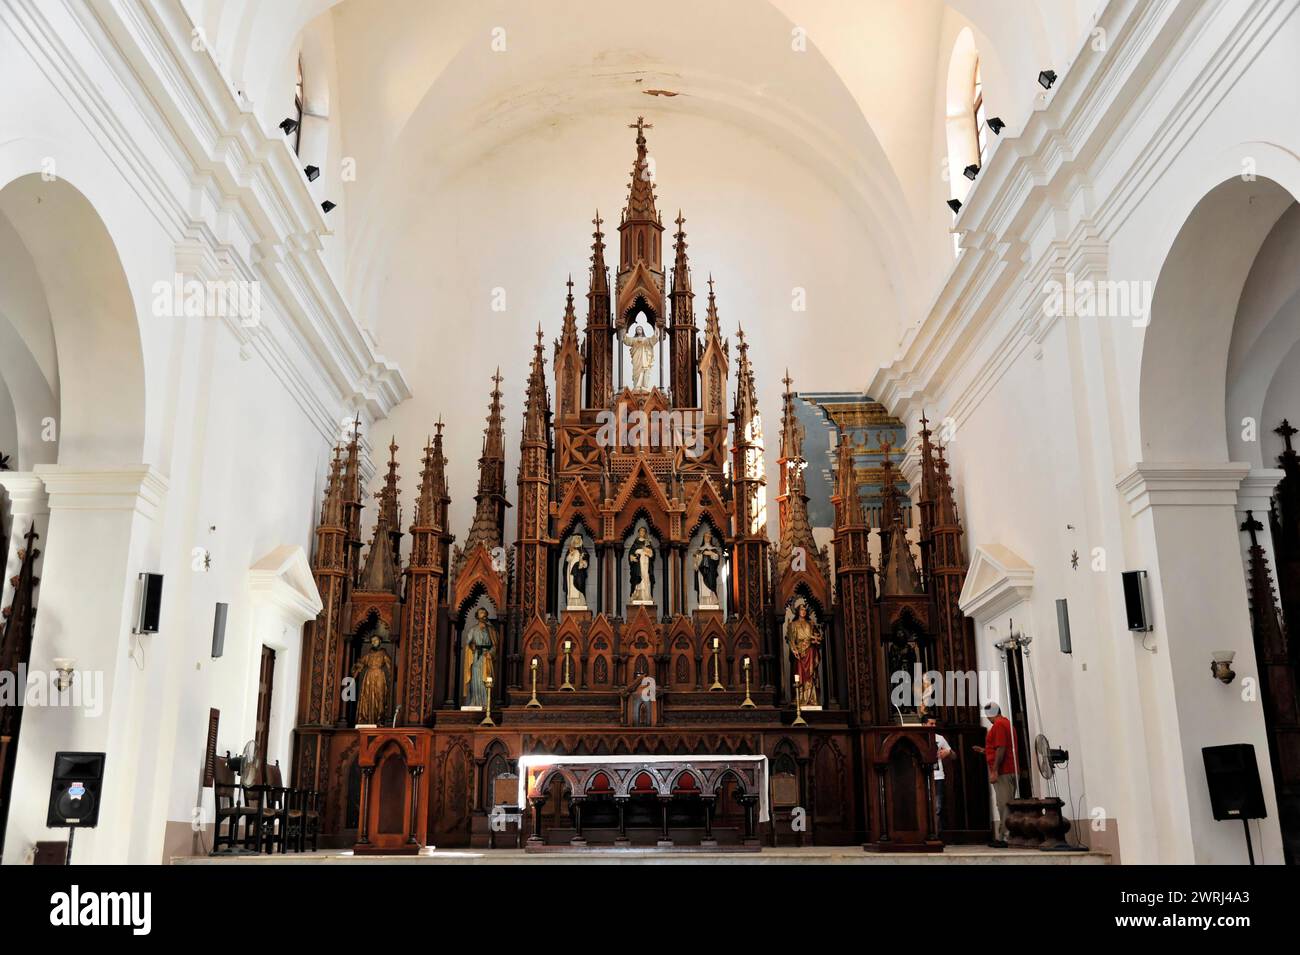 Majestätischer Hochaltar im gotischen Stil im Inneren einer Kirche mit reichen Dekorationen, Trinidad, Kuba, Zentralamerika Stockfoto